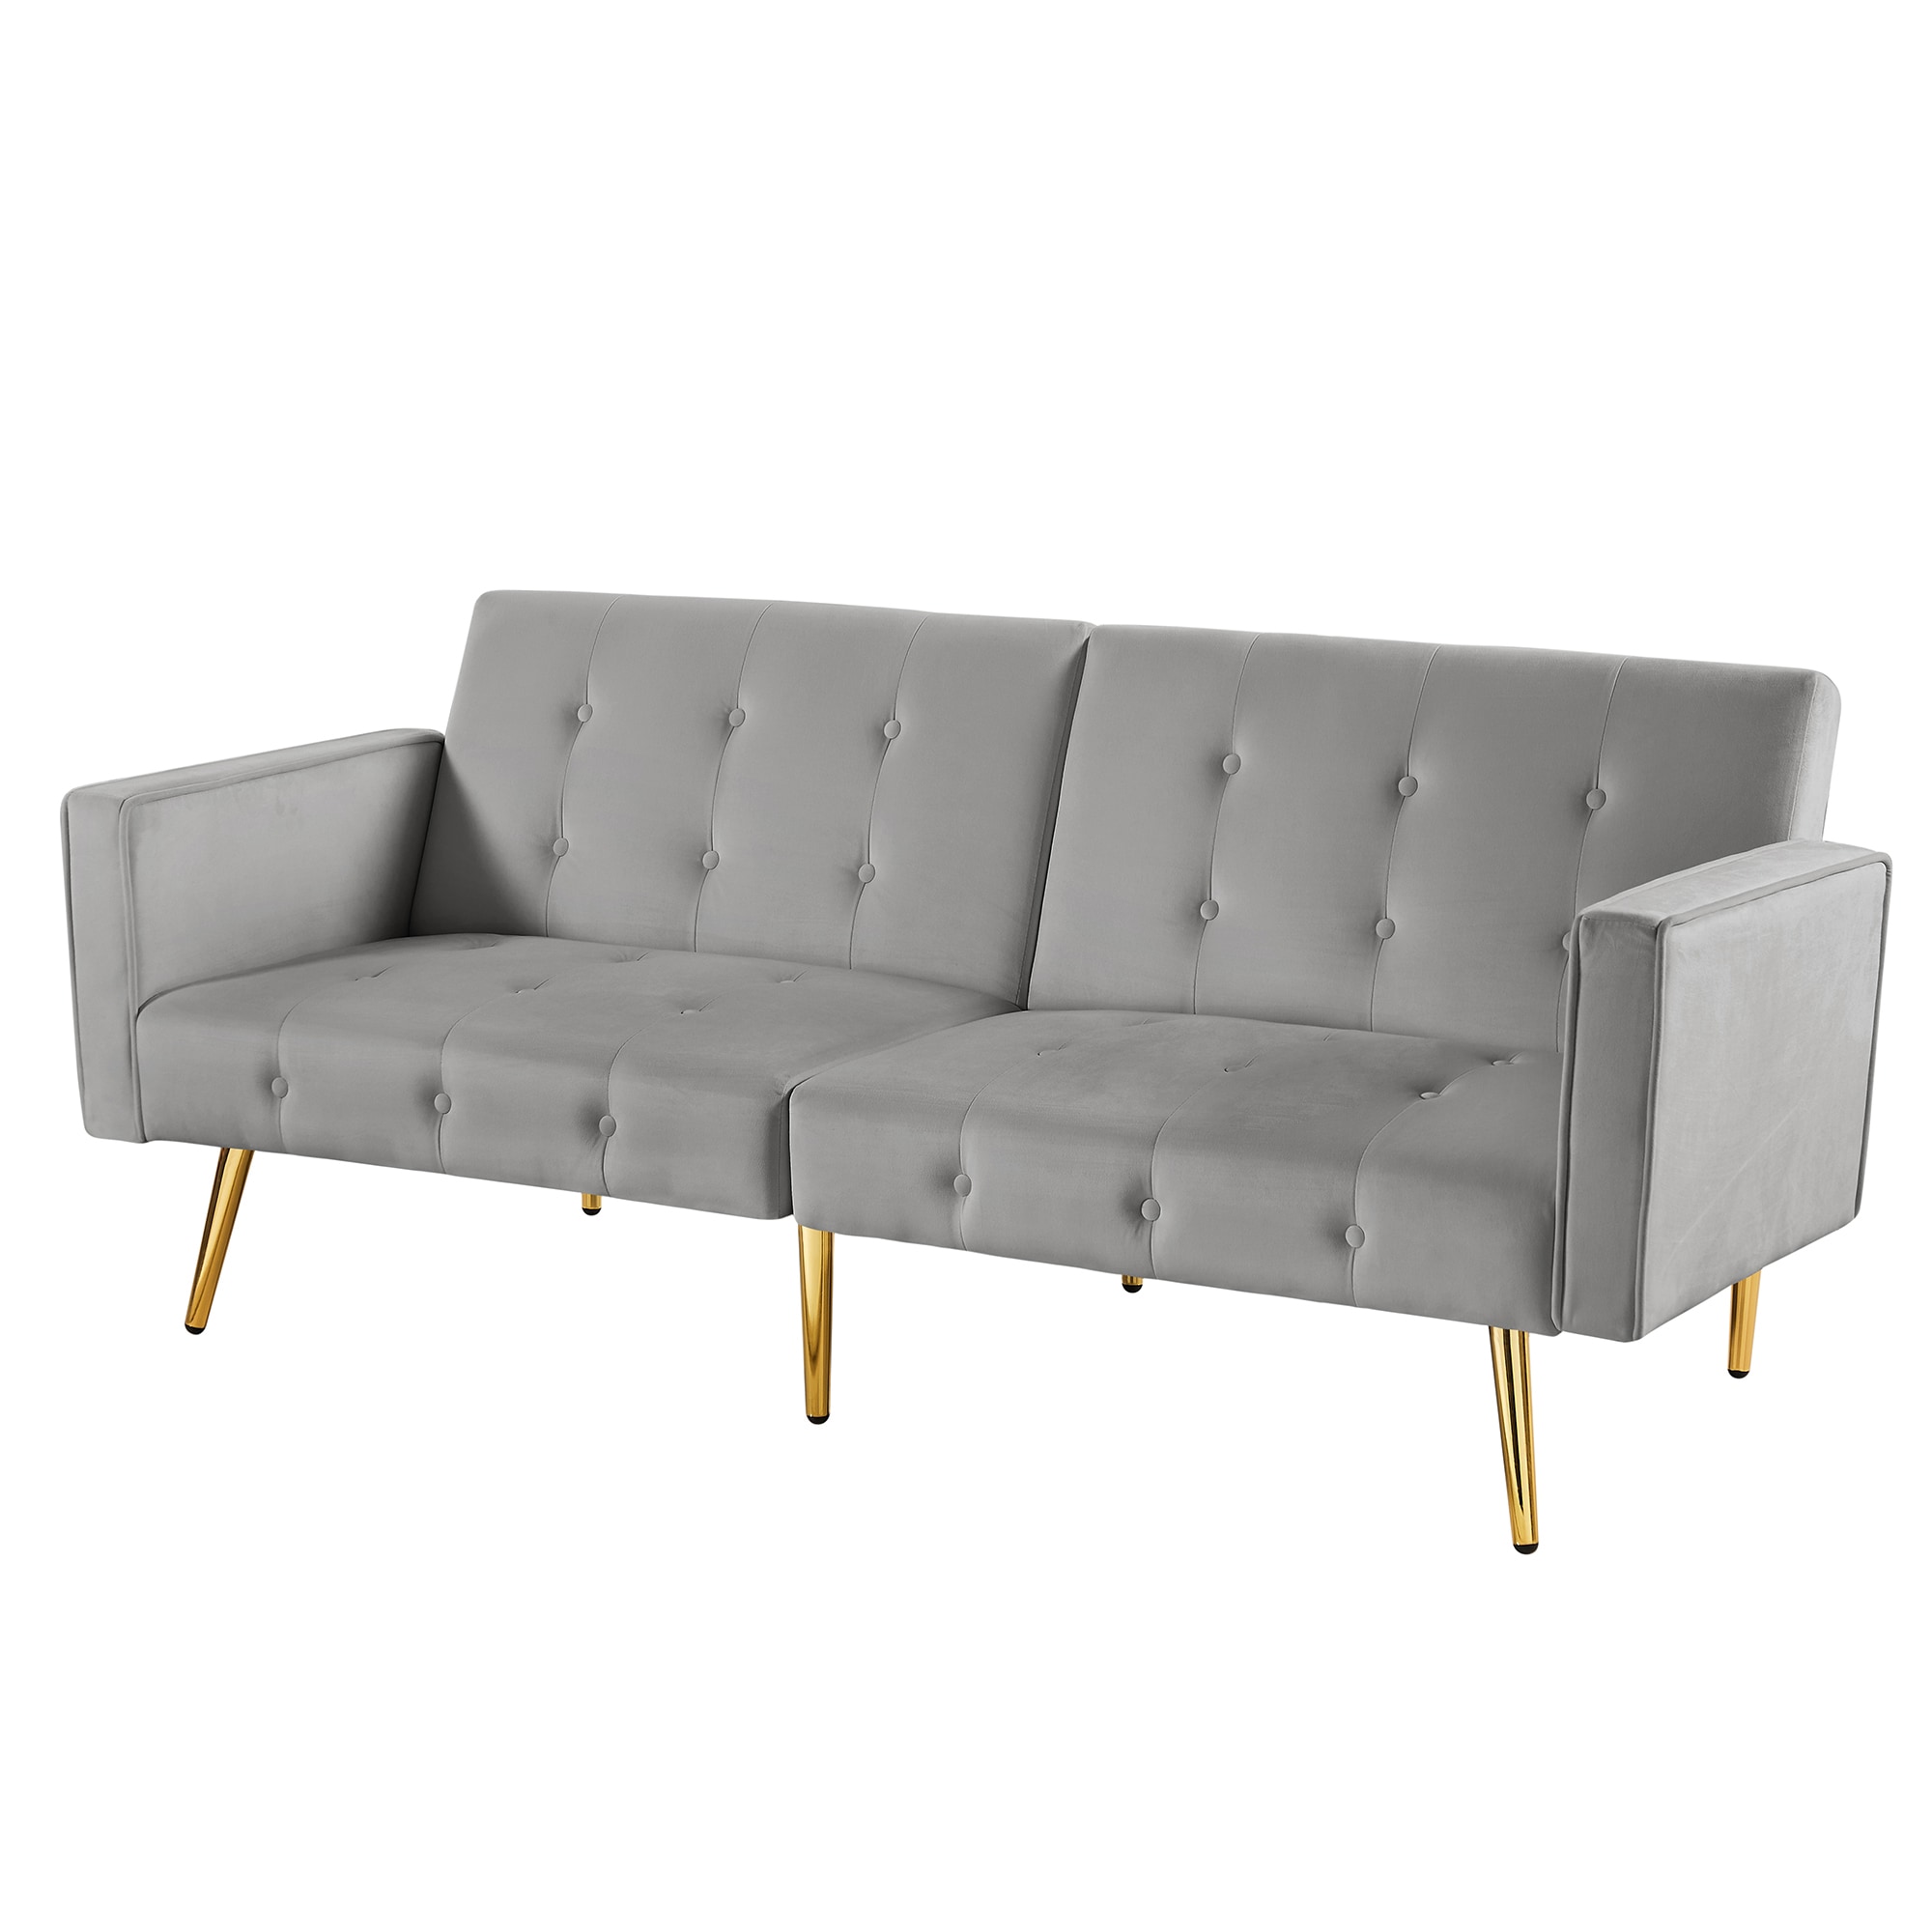 CASAINC Modern stylish upholstered sofa 76-in Modern Gray Velvet ...